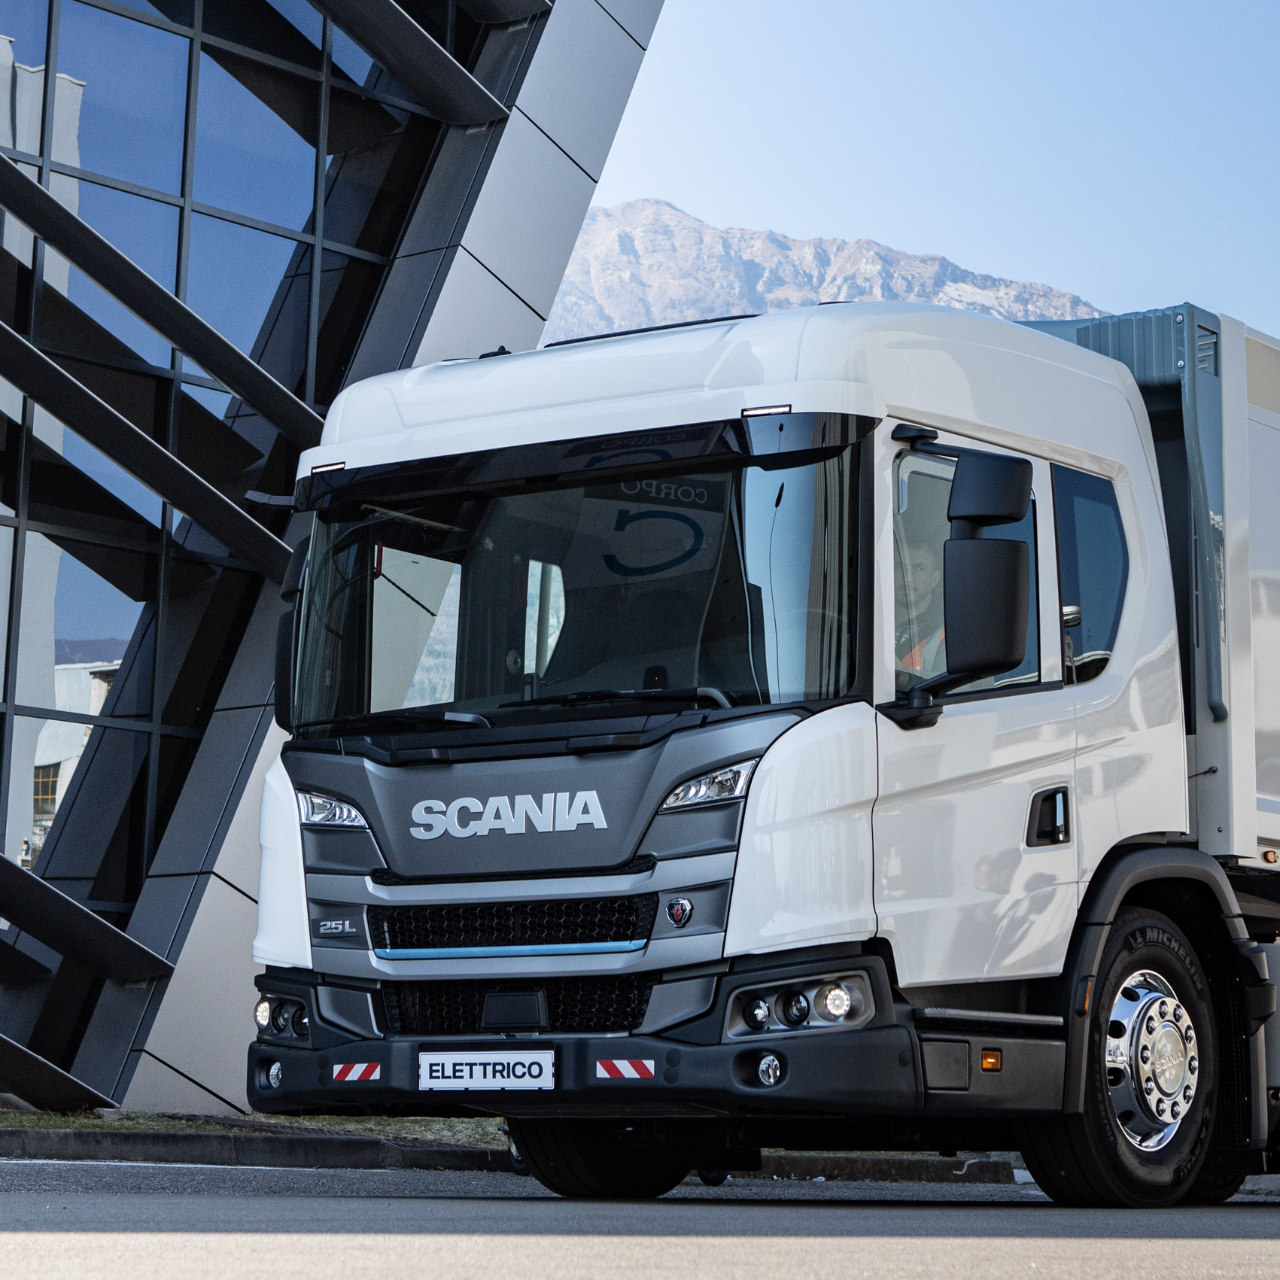 Scania racconta come si concretizza una mobilità ad impatto zero entro il 2050